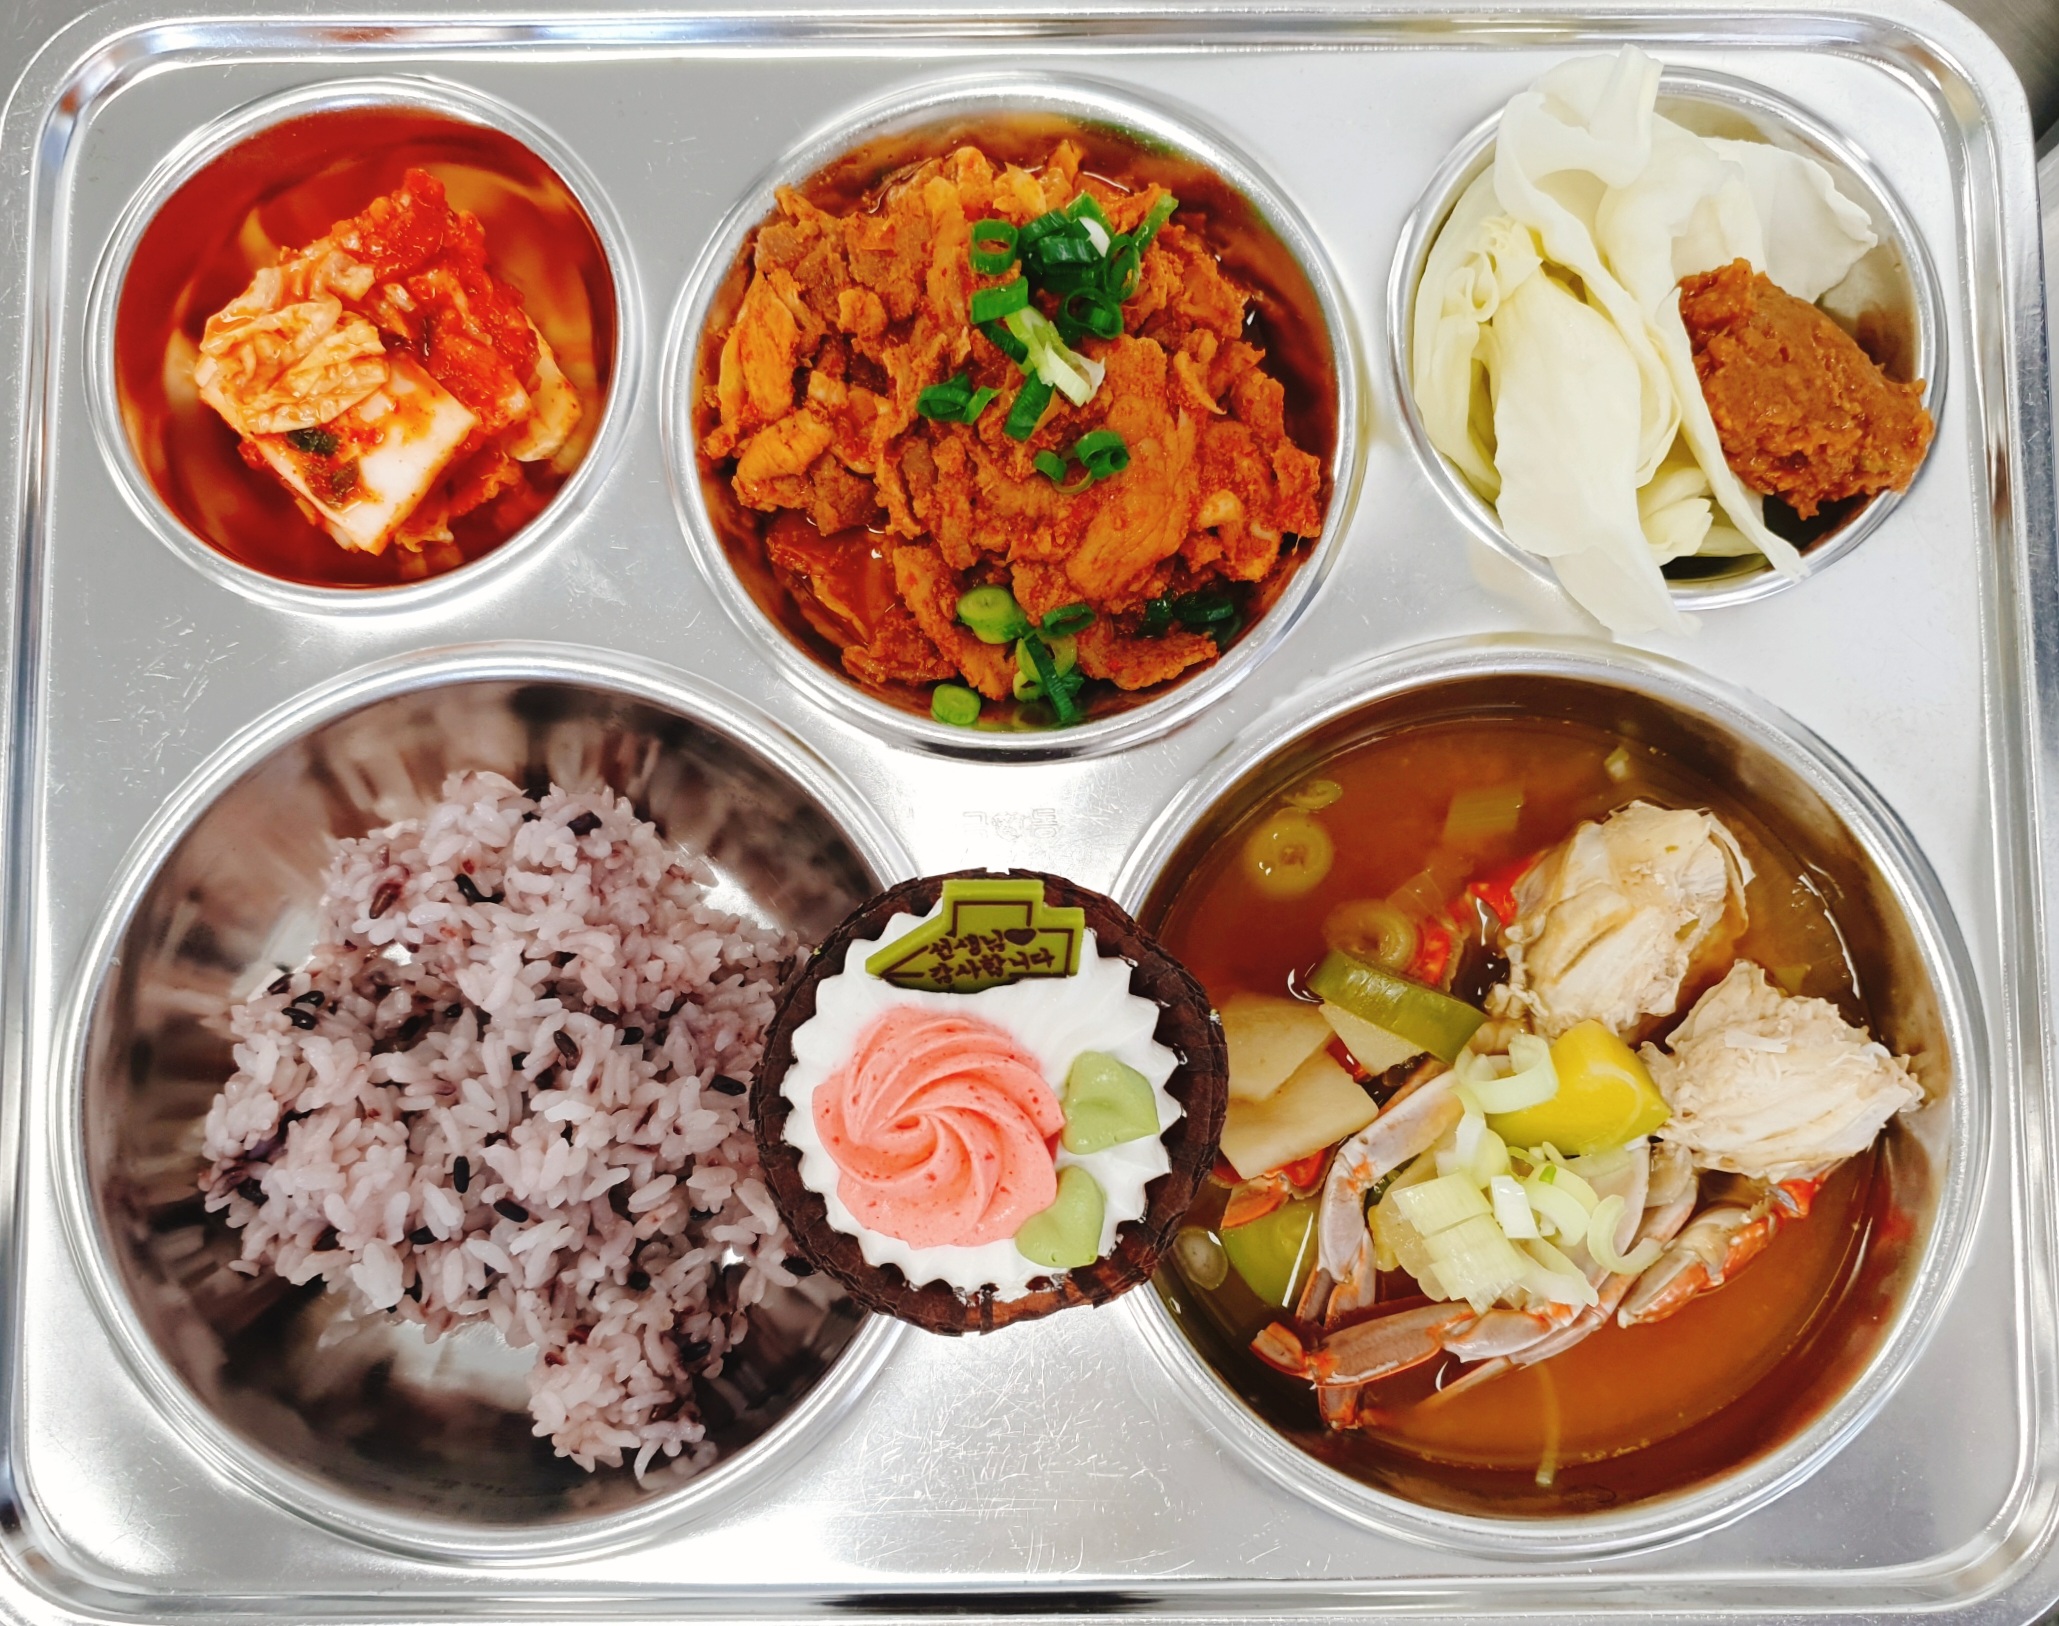 흑미밥
꽃게된장찌개
양배추쌈&쌈장
돼지불고기
배추김치
케이크(감사)